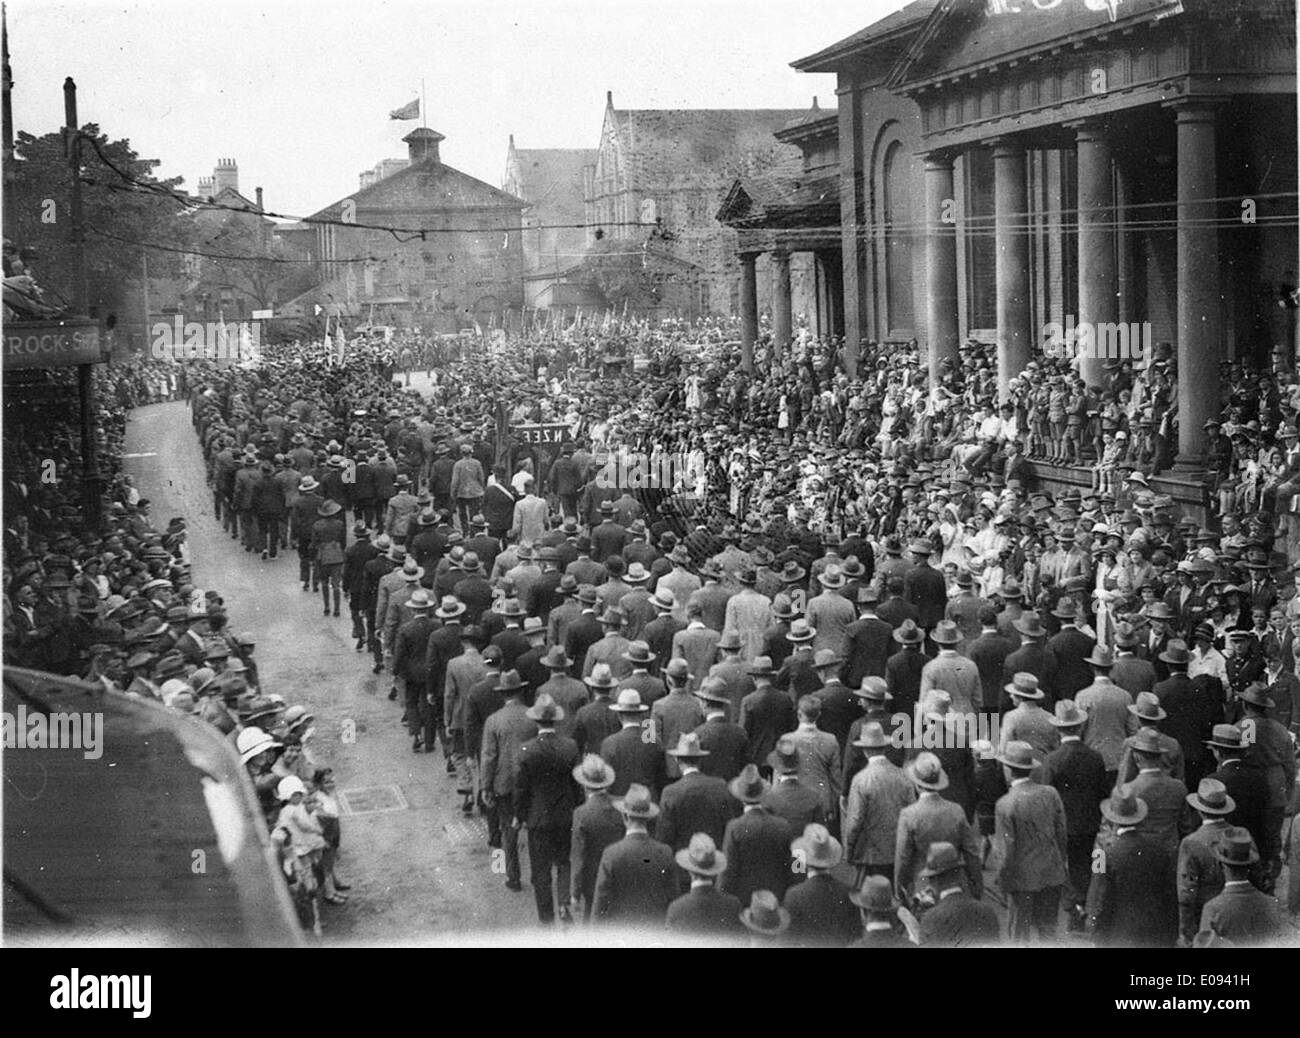 Marchando hacia Queen's Square, c. 1931, por Sam & Ted Hoood Foto de stock